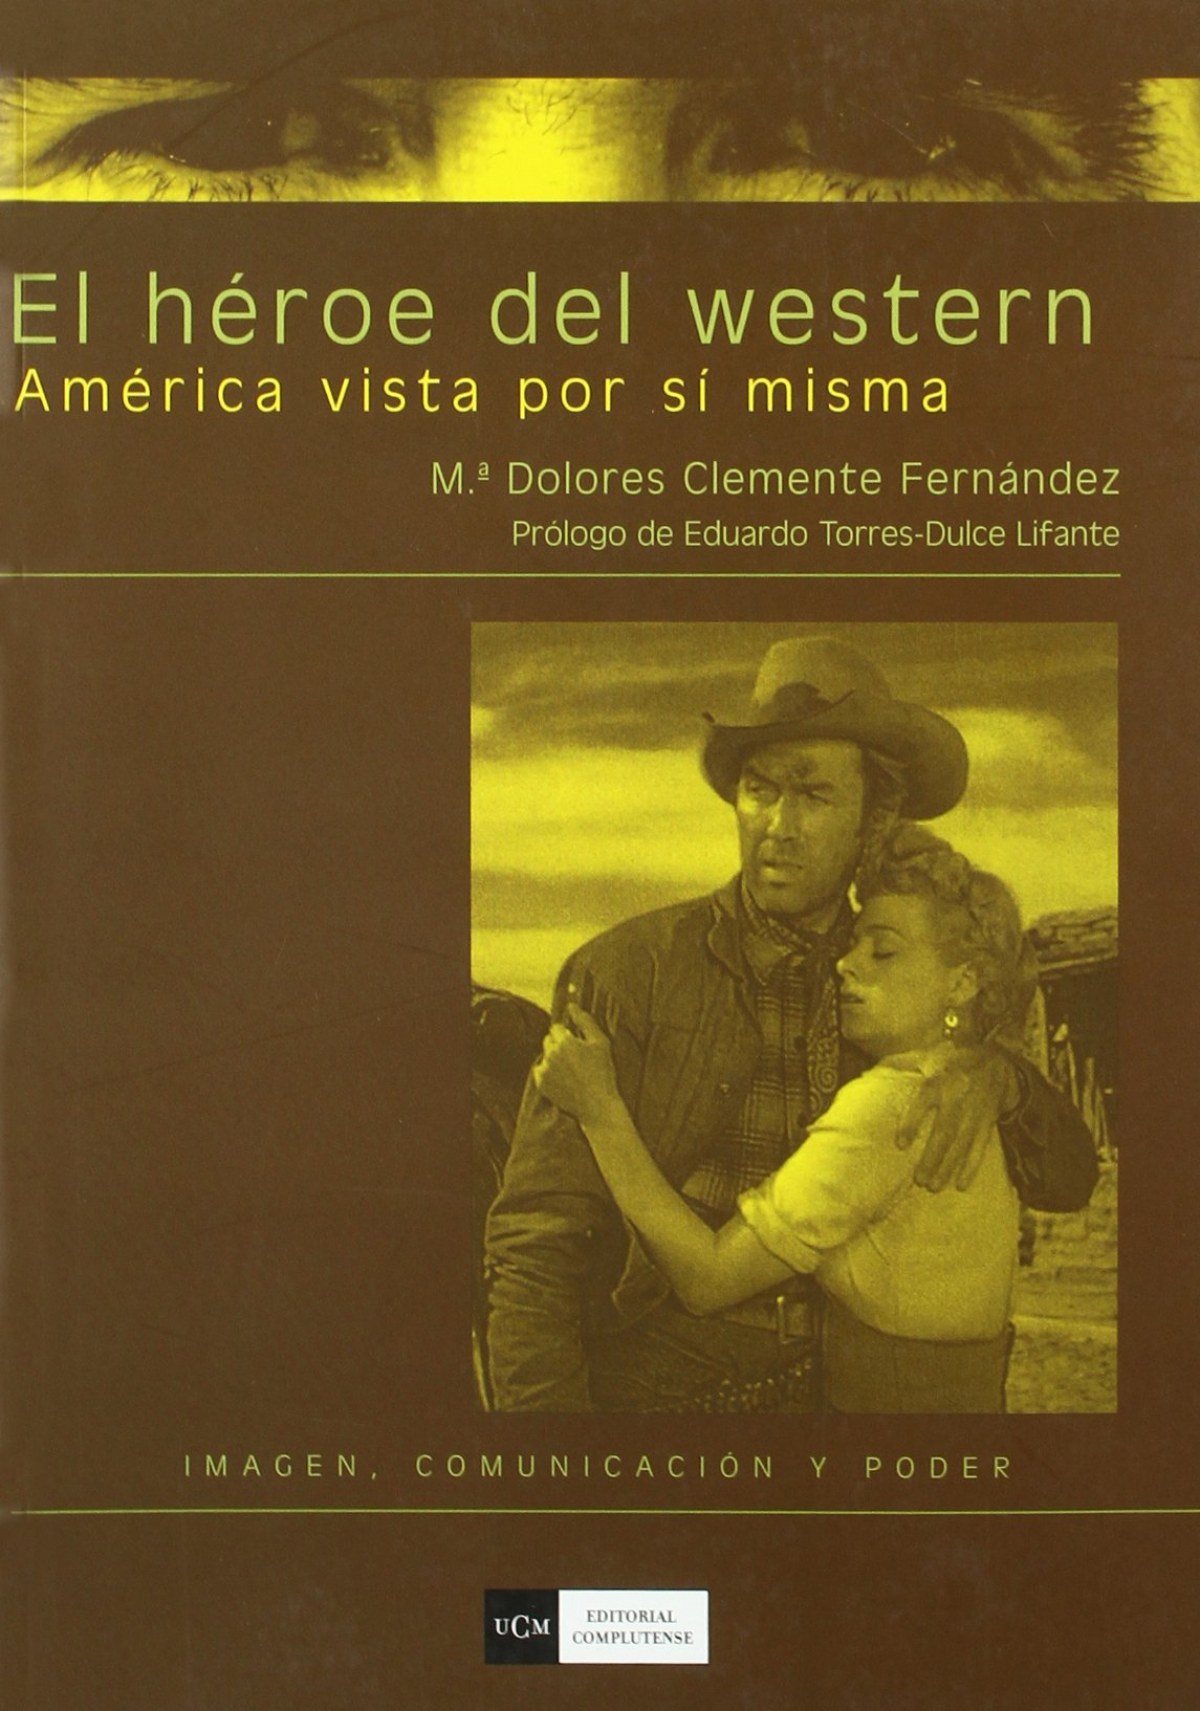 El heroe del western. America vista por si misma - Clemente Fernandez, Mª Dolores